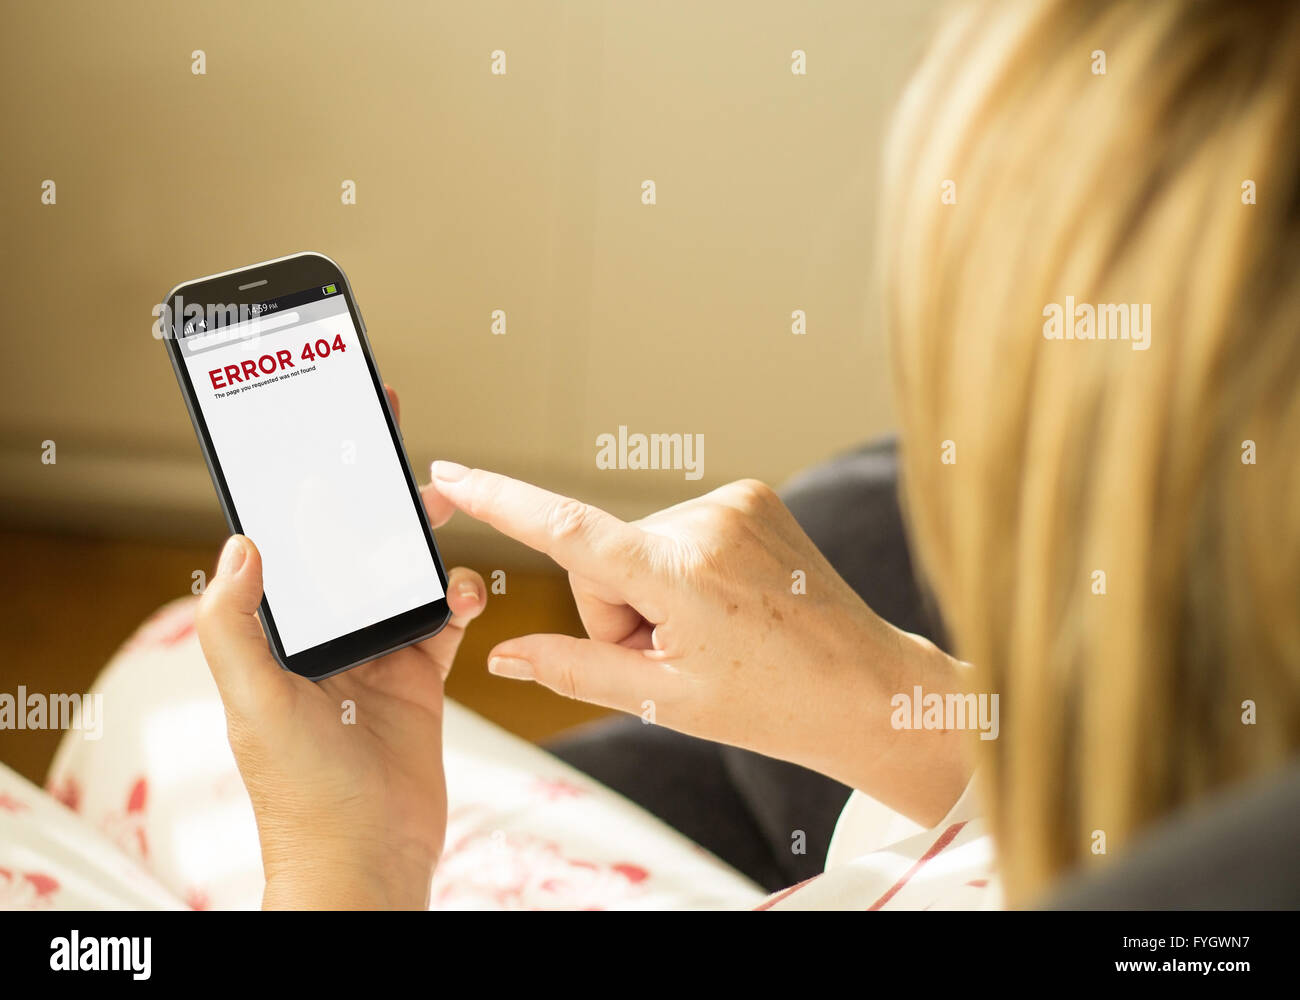 Concept de communication modernes : smartphone tactile 3D généré avec erreur 404 sur l'écran. Écran graphi Banque D'Images